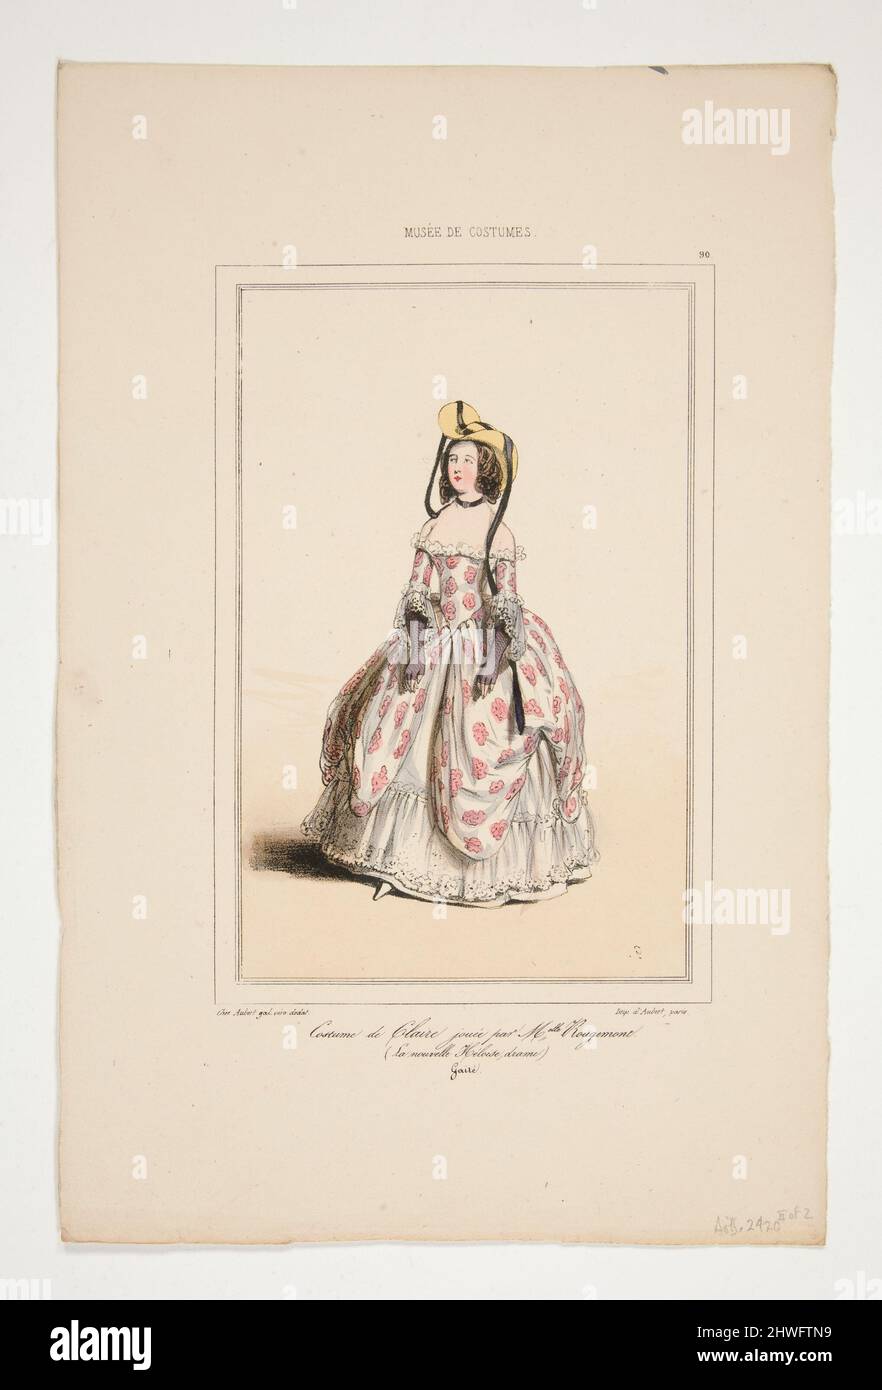 Costume de Claire, joue par M’le Rougemont. ….  Artist: Paul Gavarni, French, 1804–1866 Stock Photo